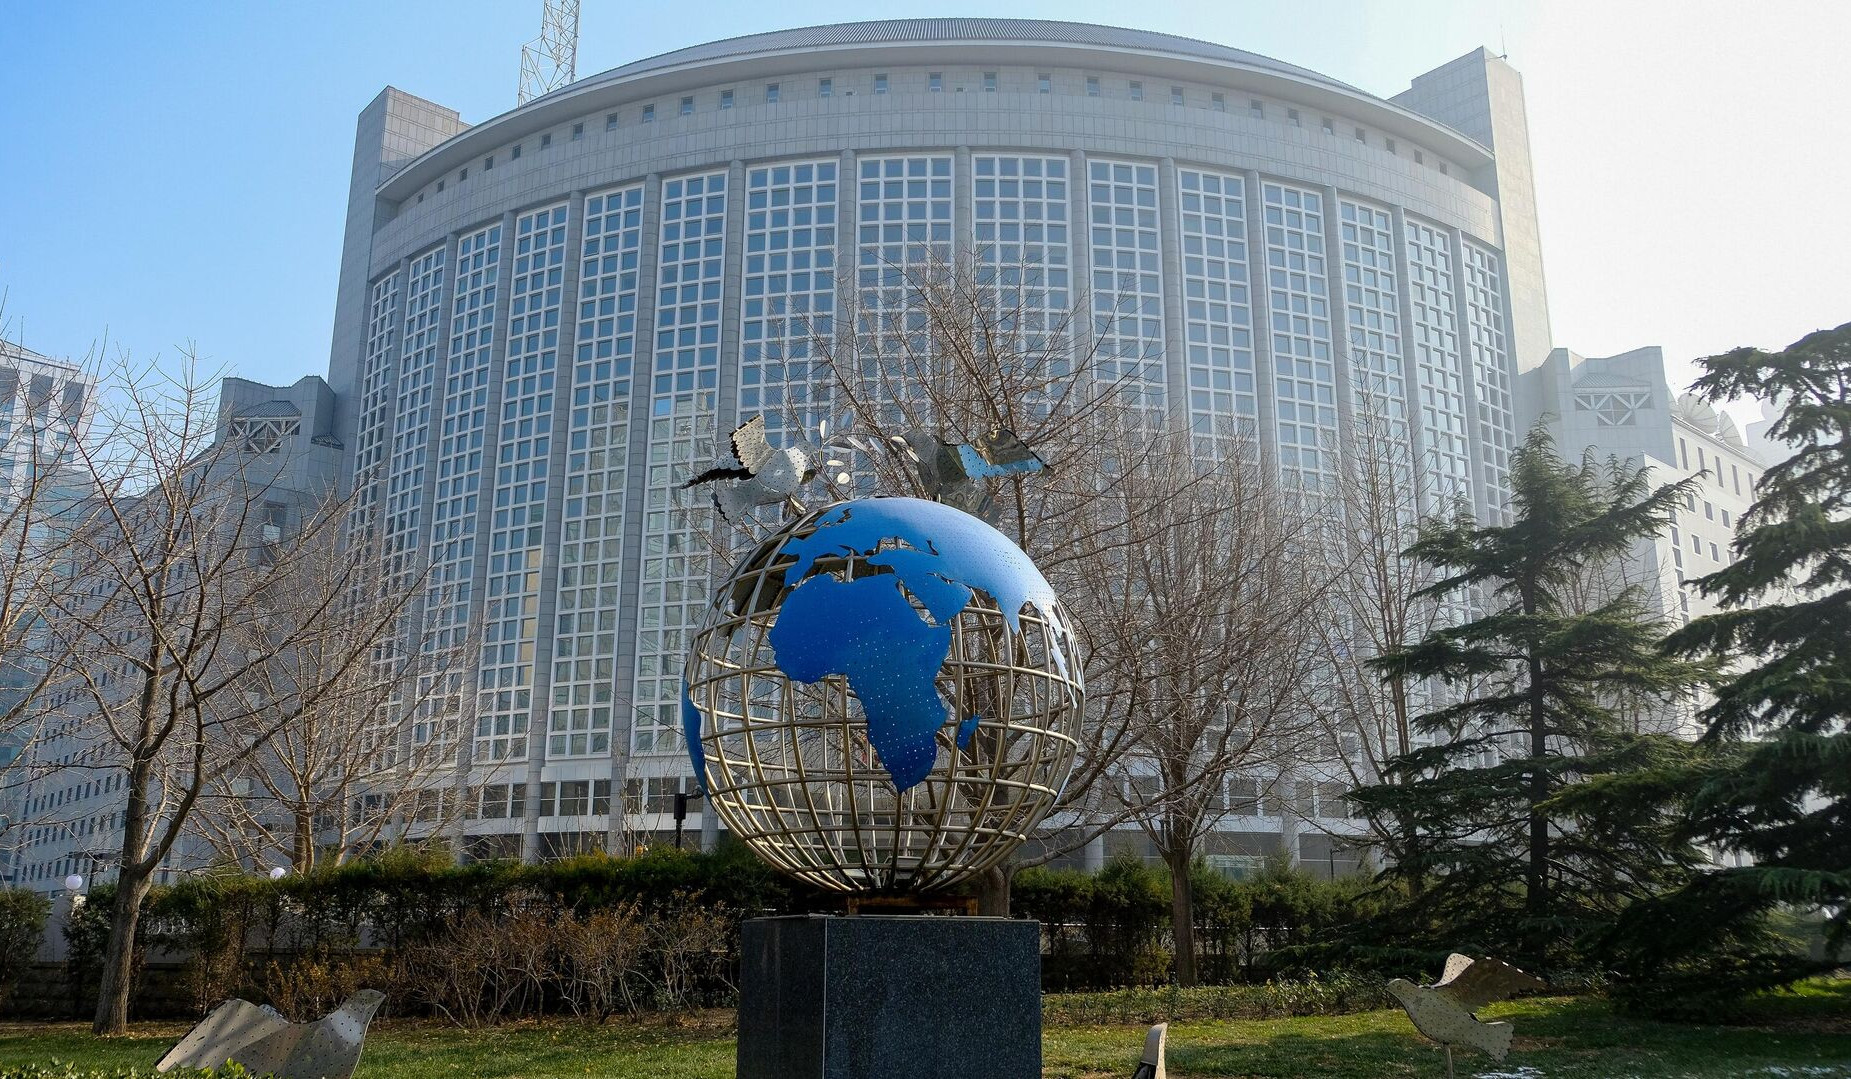 Пекин призывает Армению и Азербайджан избегать обострения ситуации в регионе: Министерство иностранных дел Китая